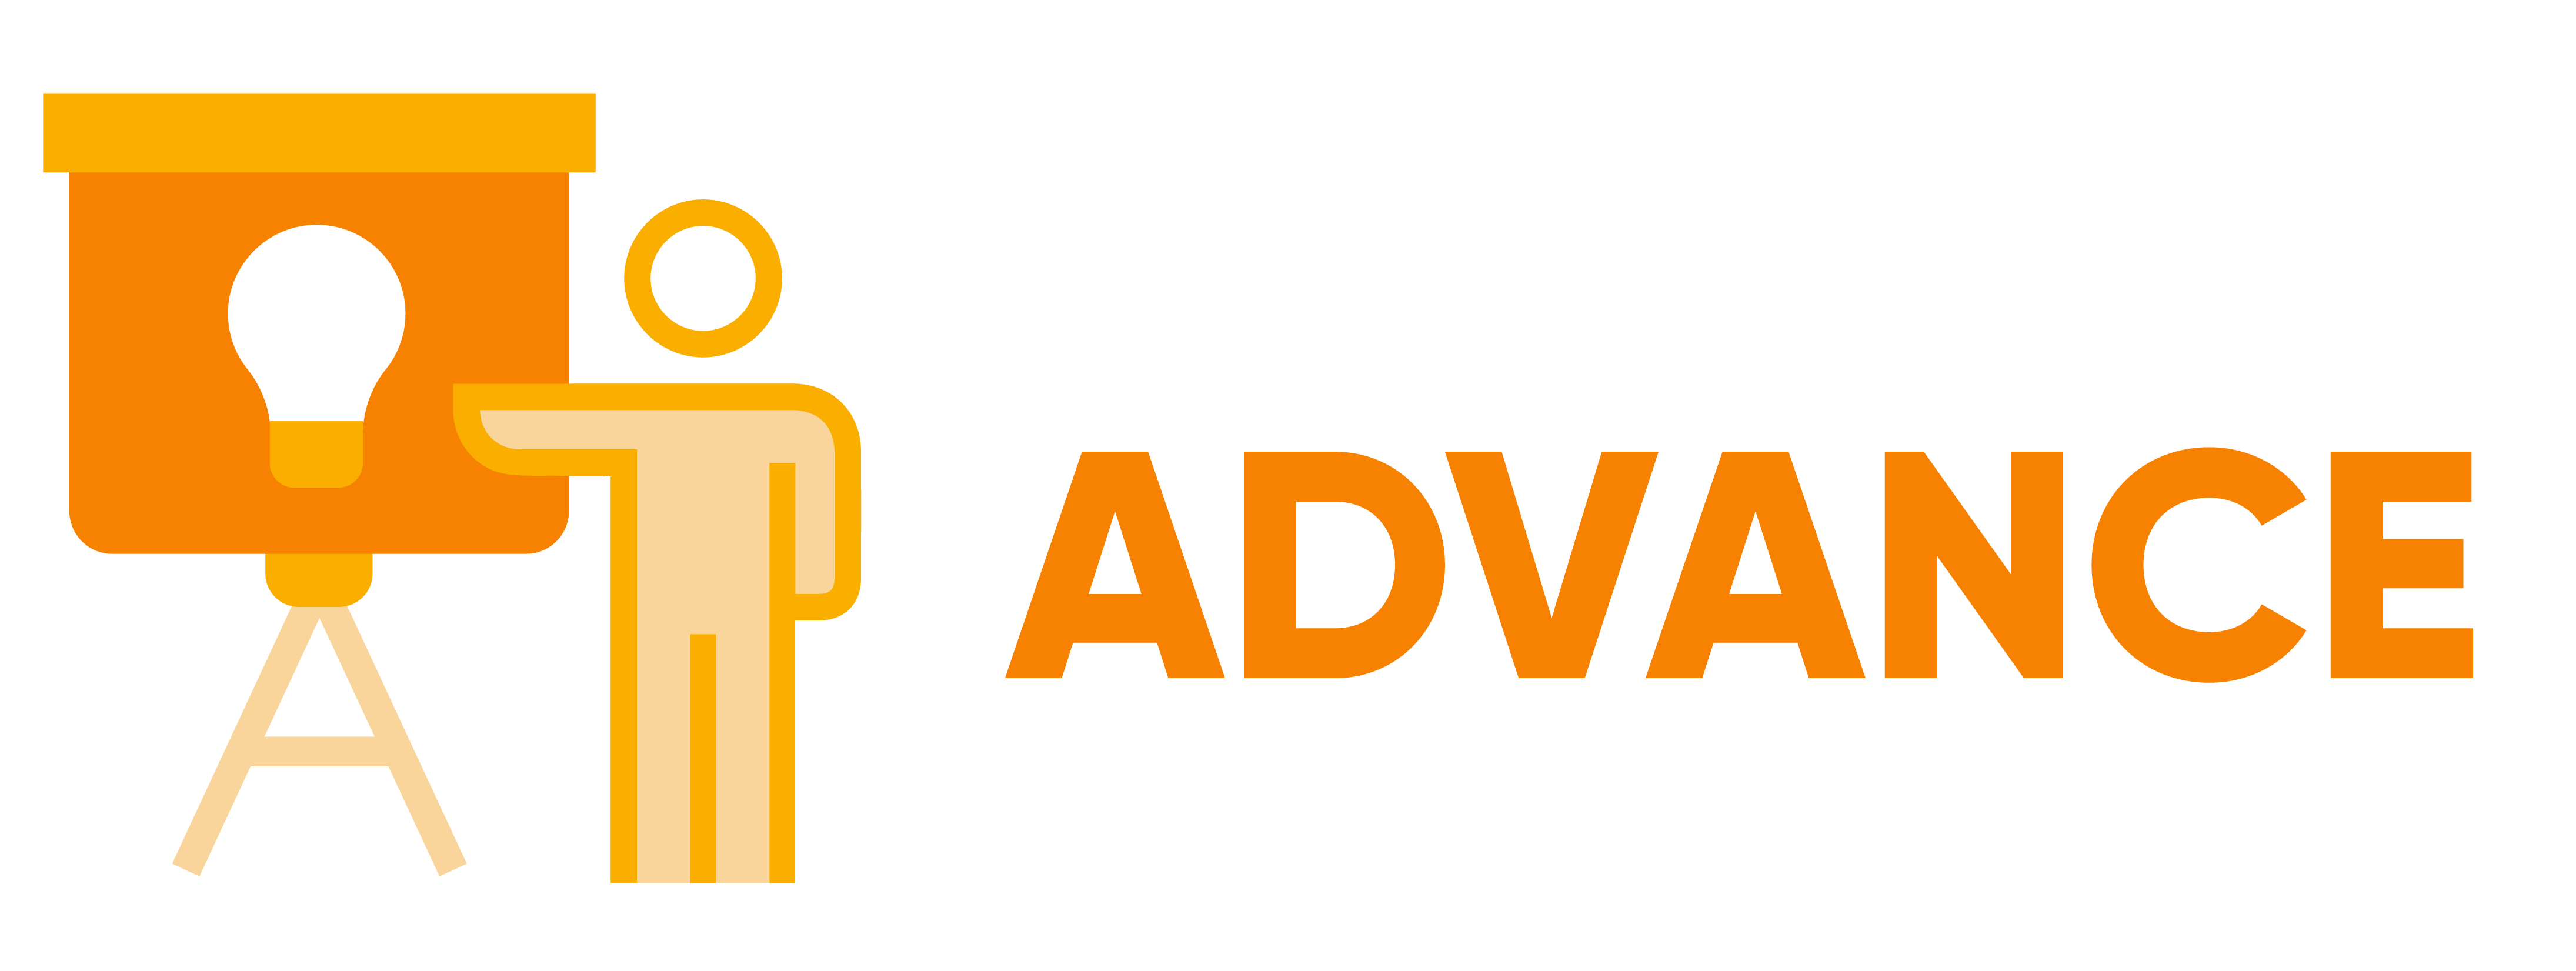 I-ACT ADVANCE Training Program